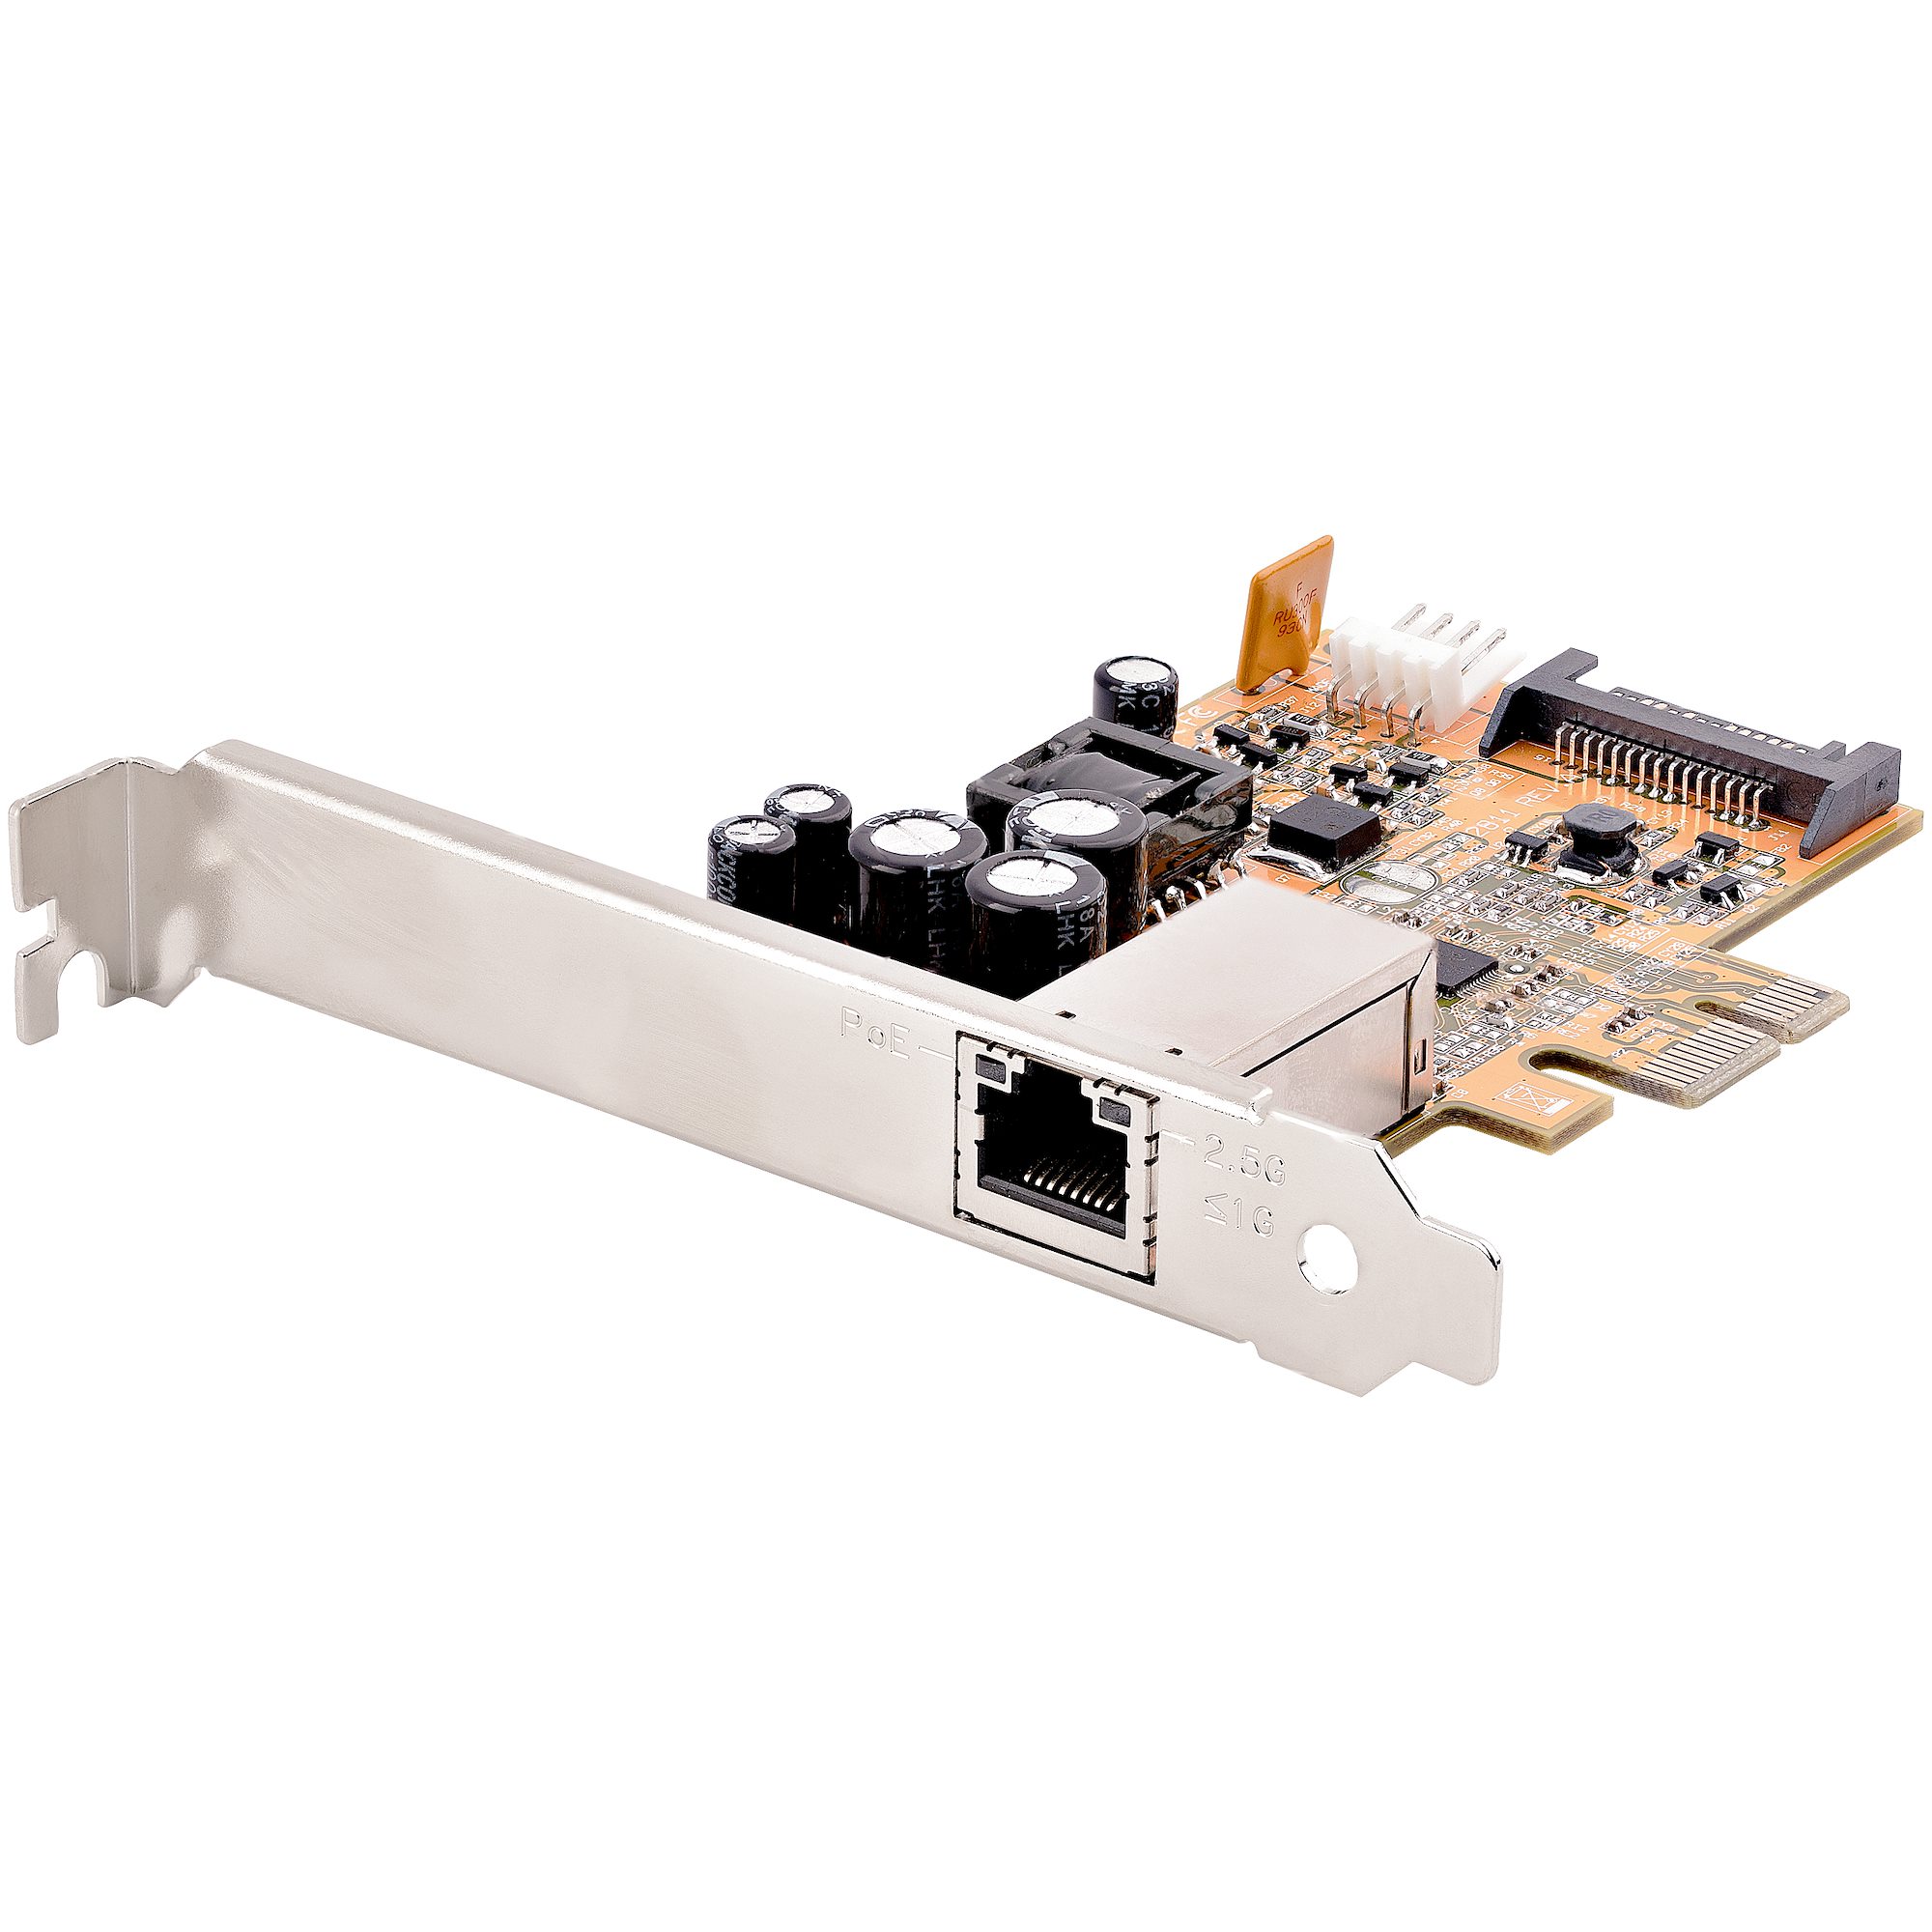 Carte réseau PCI Express PCIE X1 à 4 ports RJ45 1000Mbps Gigabit